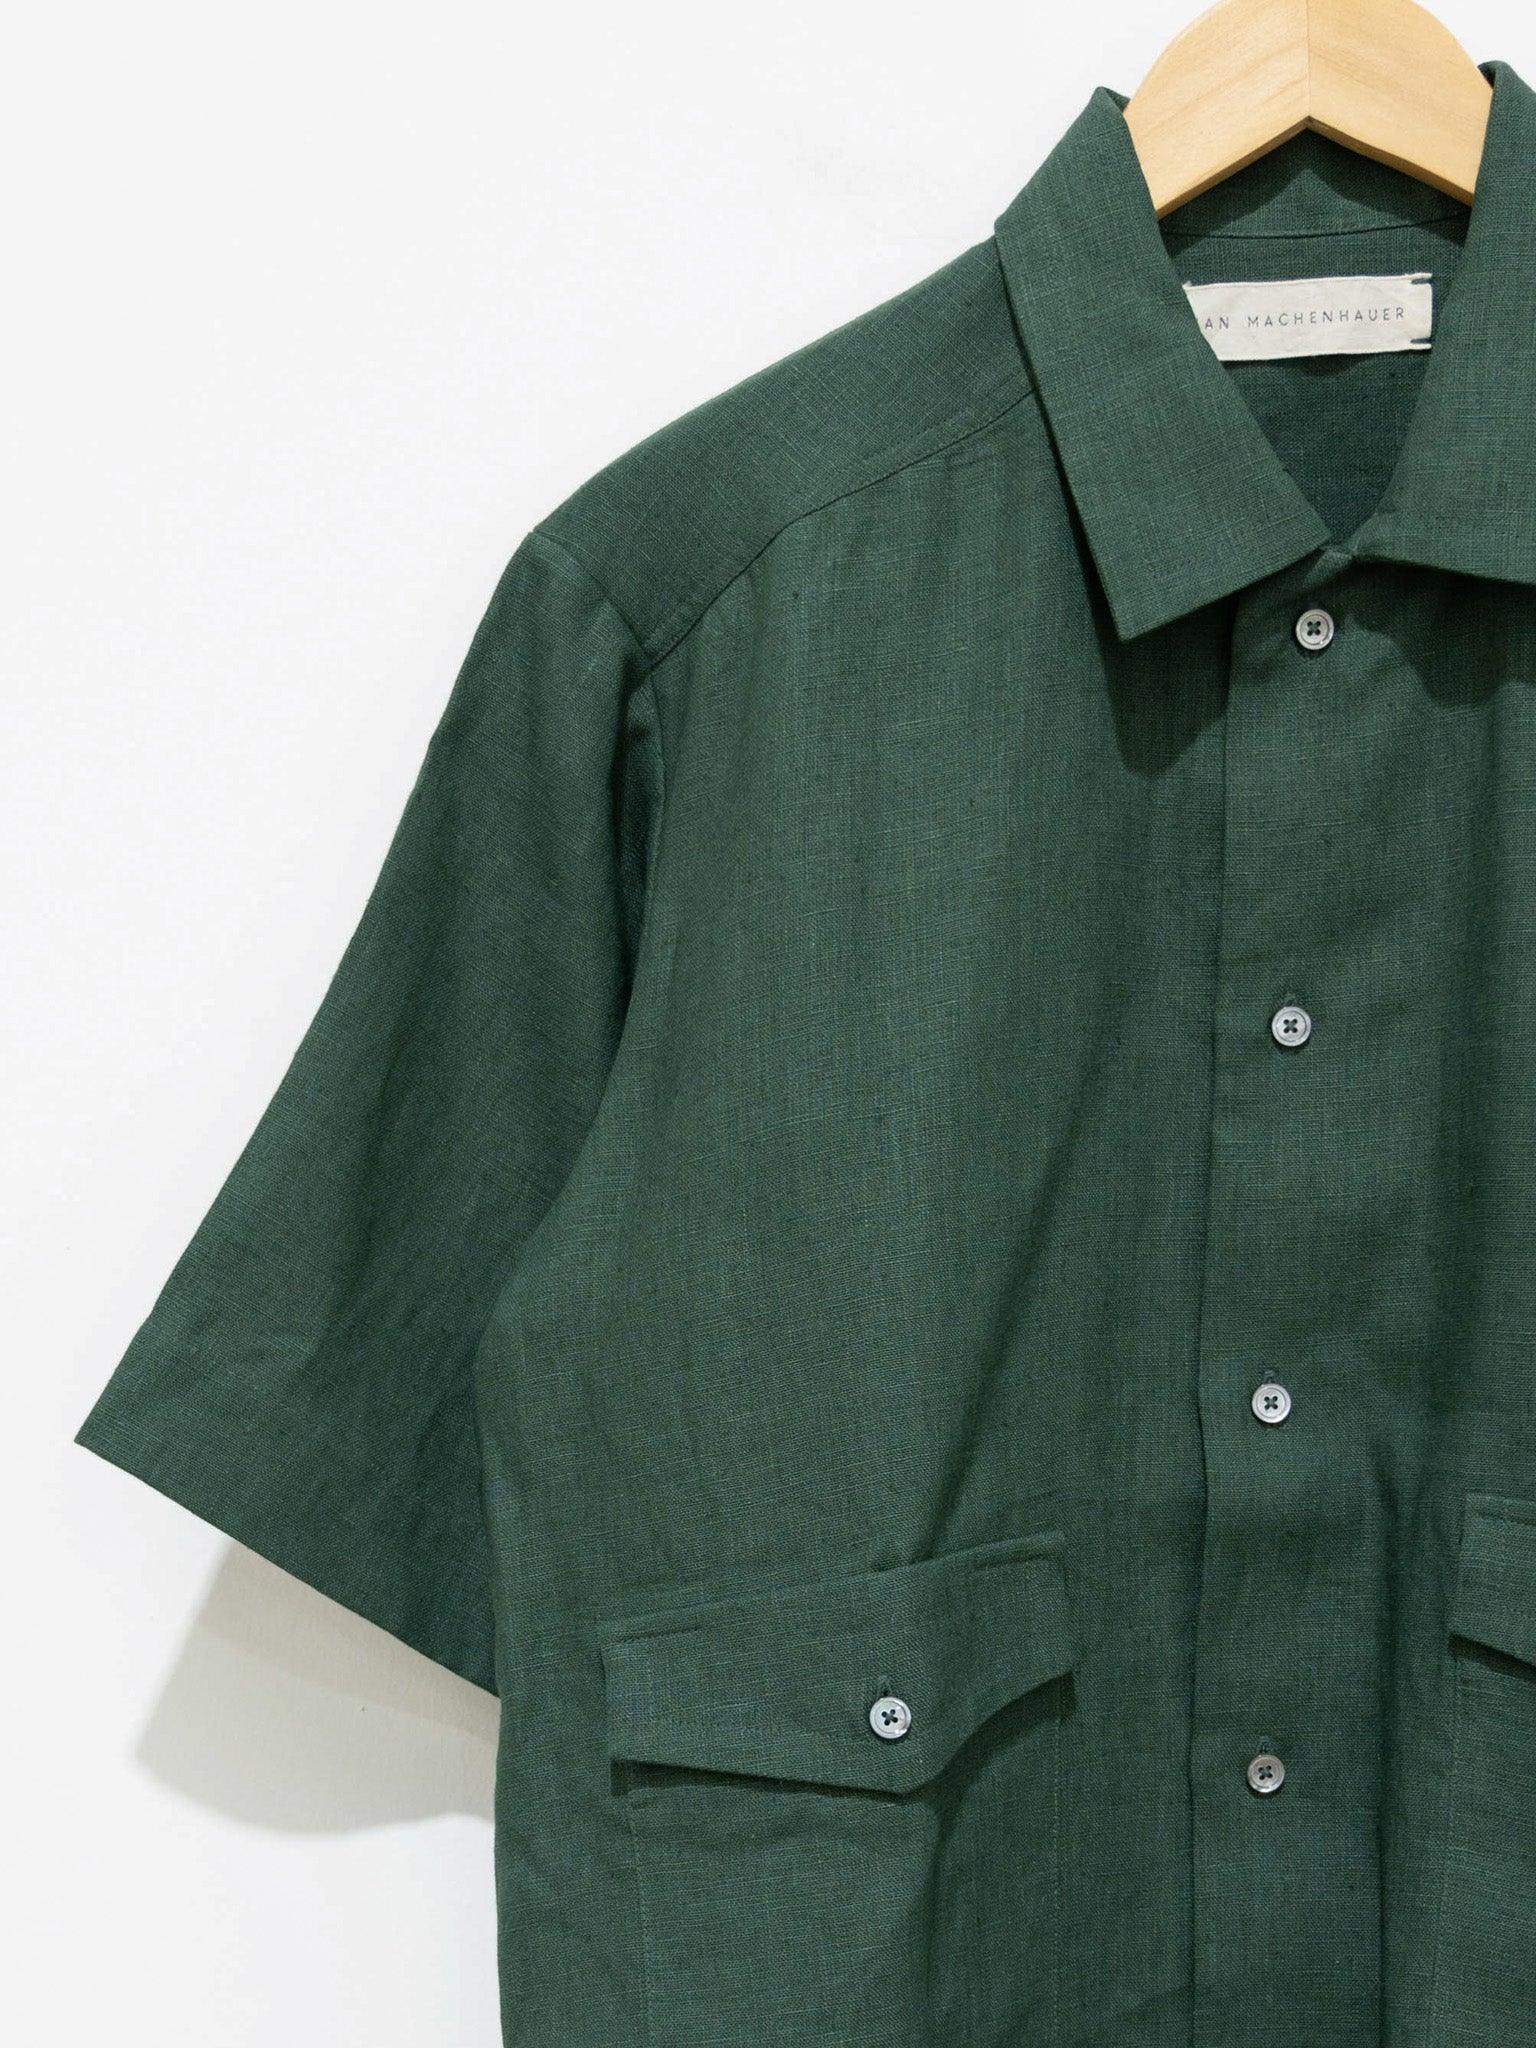 Namu Shop - Jan Machenhauer Zane Shirt - Forest Linen